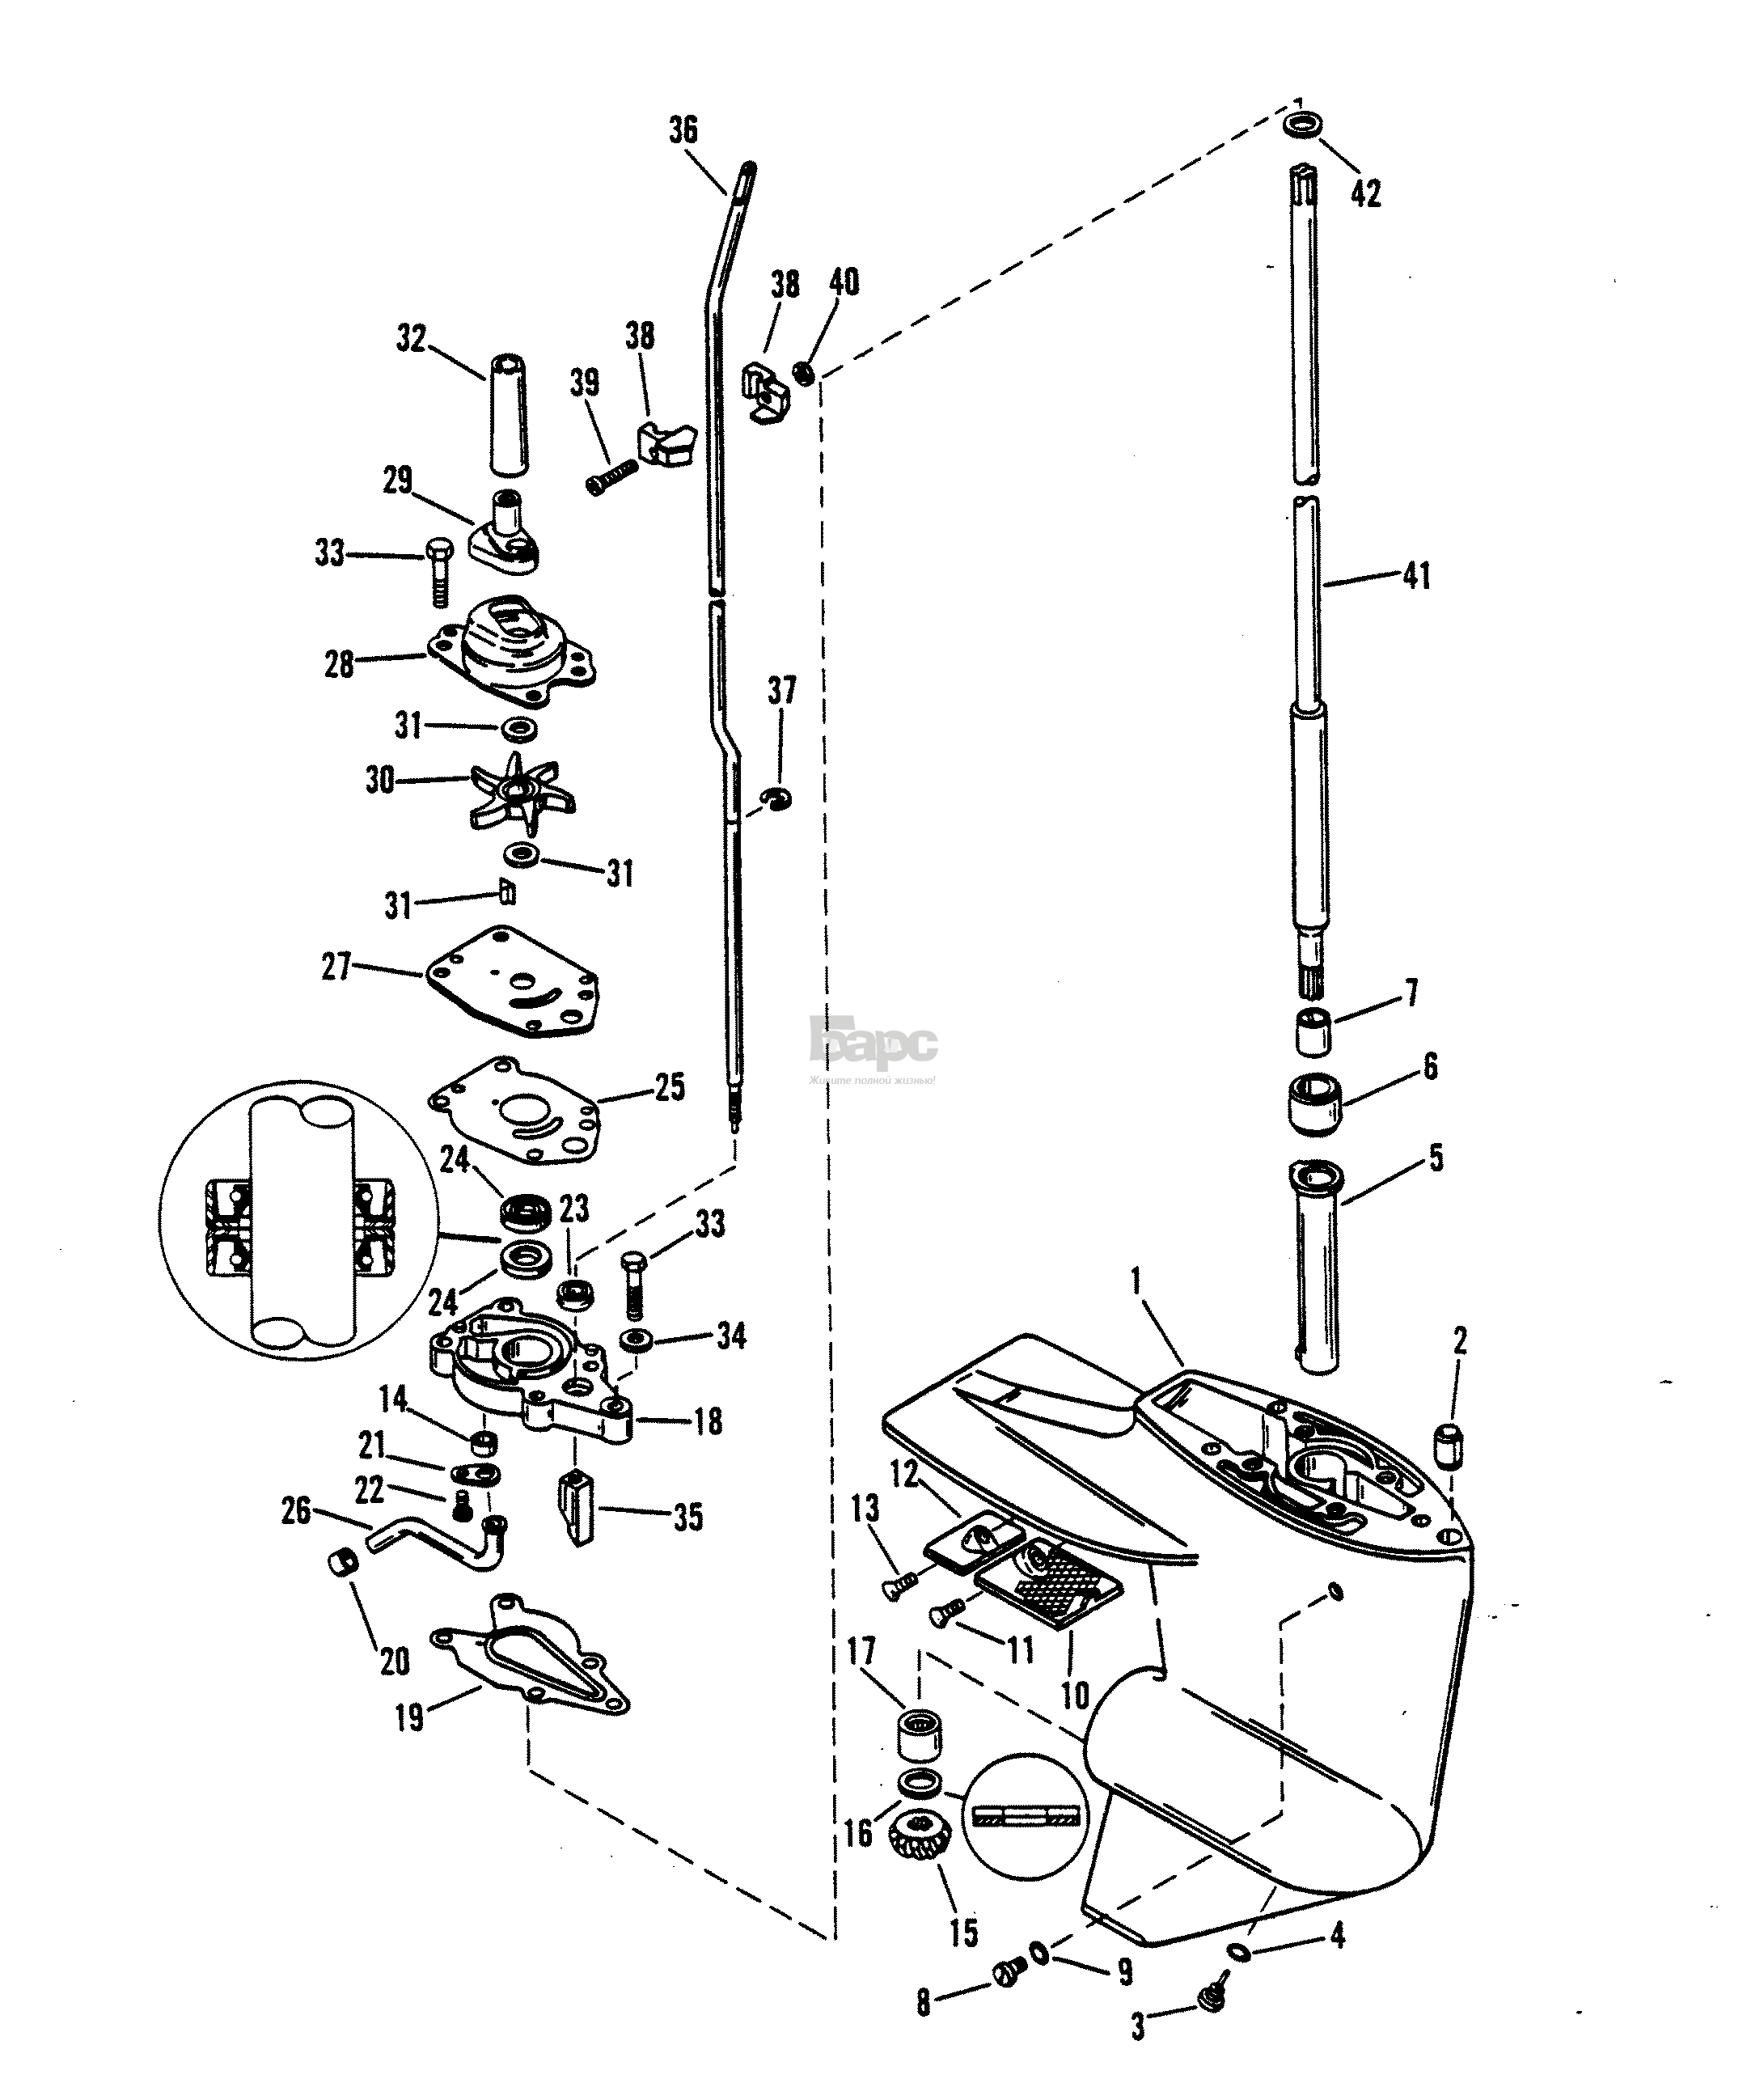 GEAR HSG (DRIVE SHAFT) DESIGN II